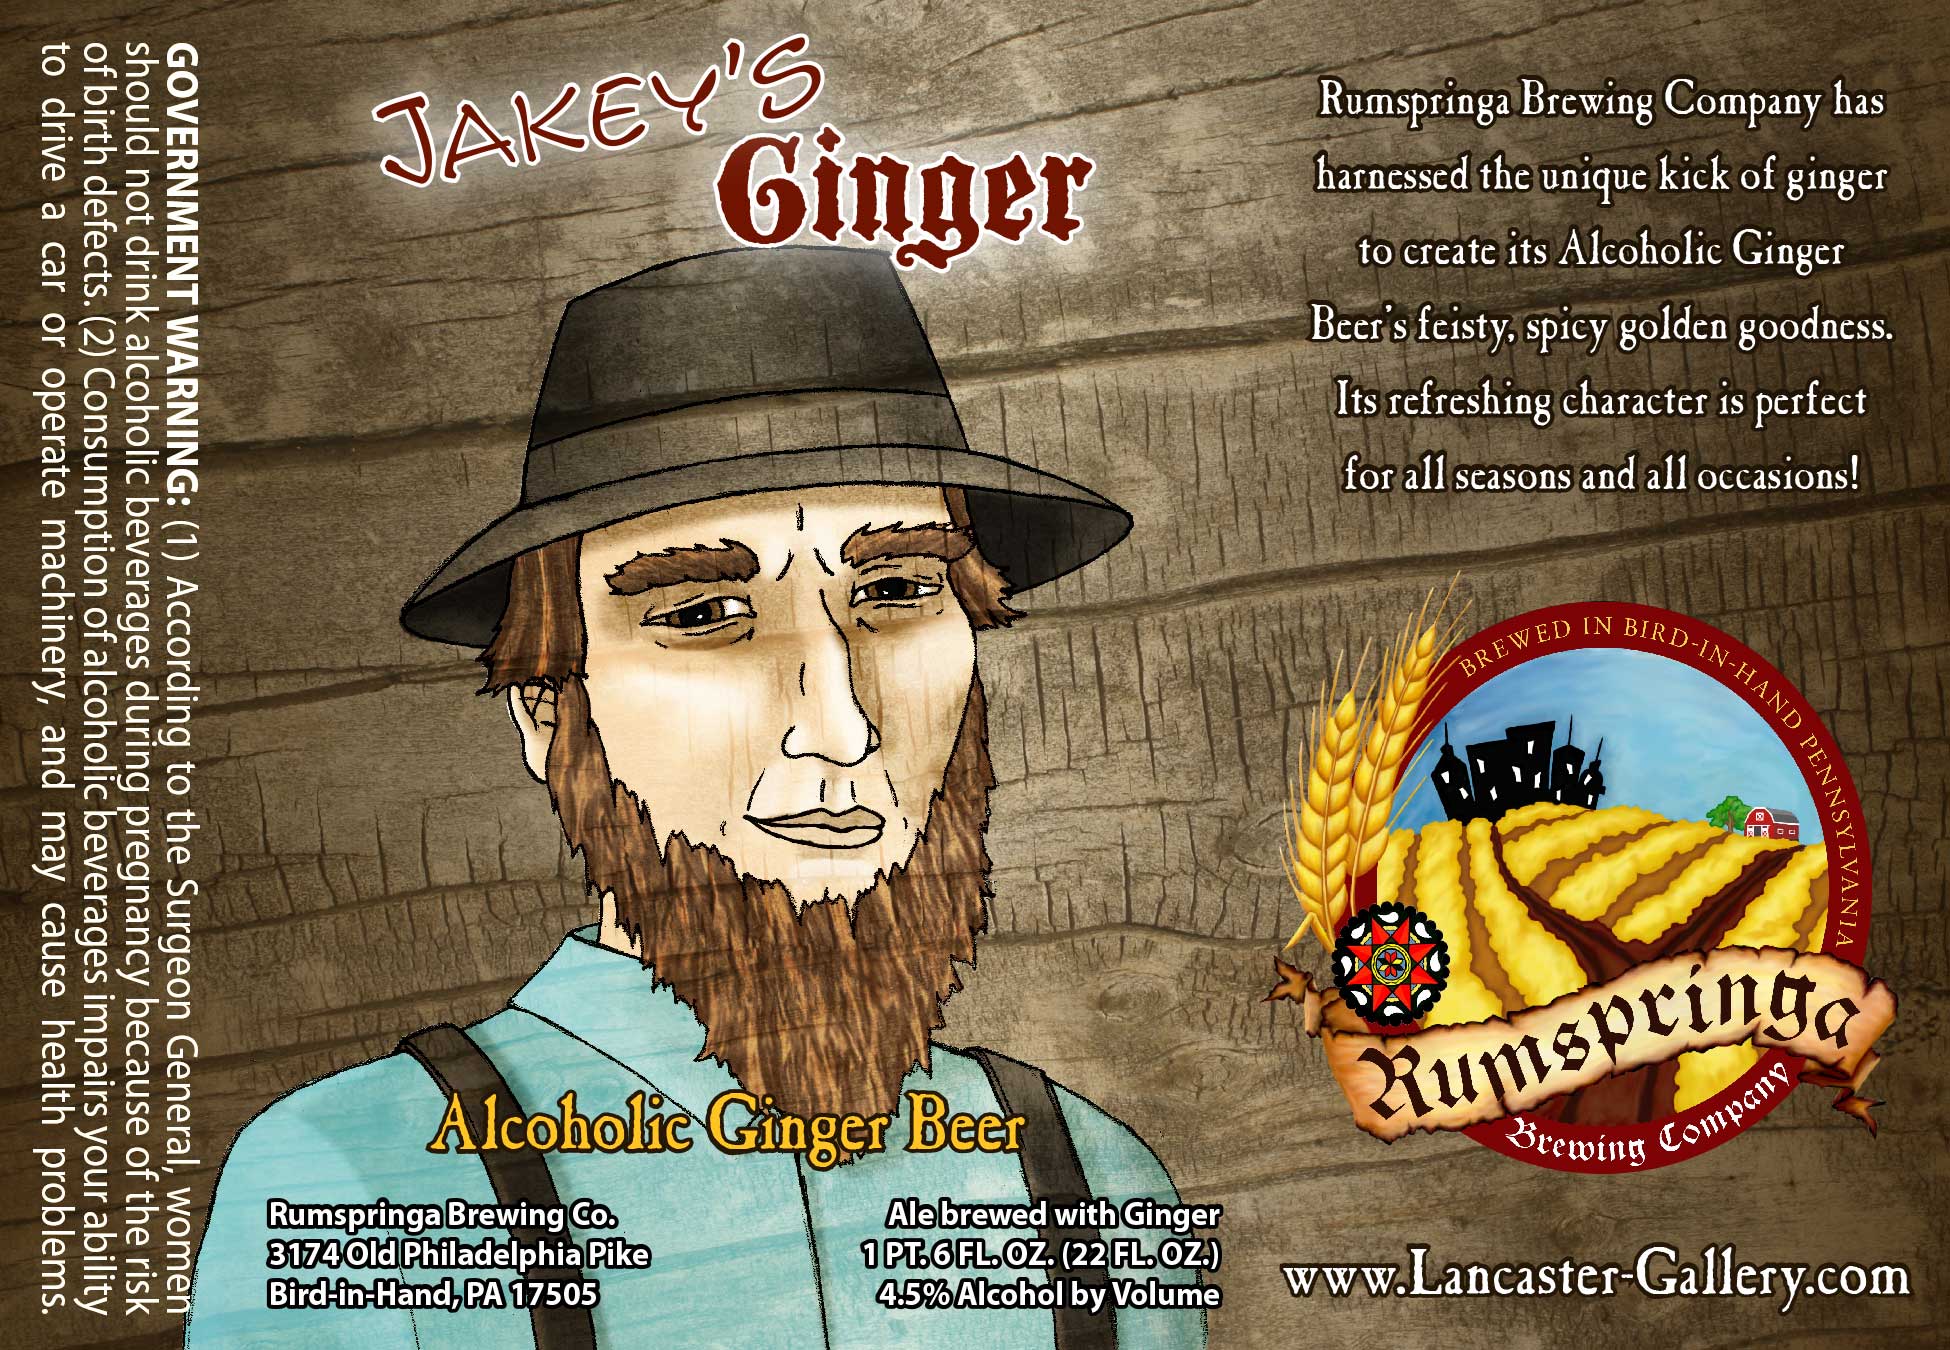 Rumspringa Brewing Jakey's Ginger